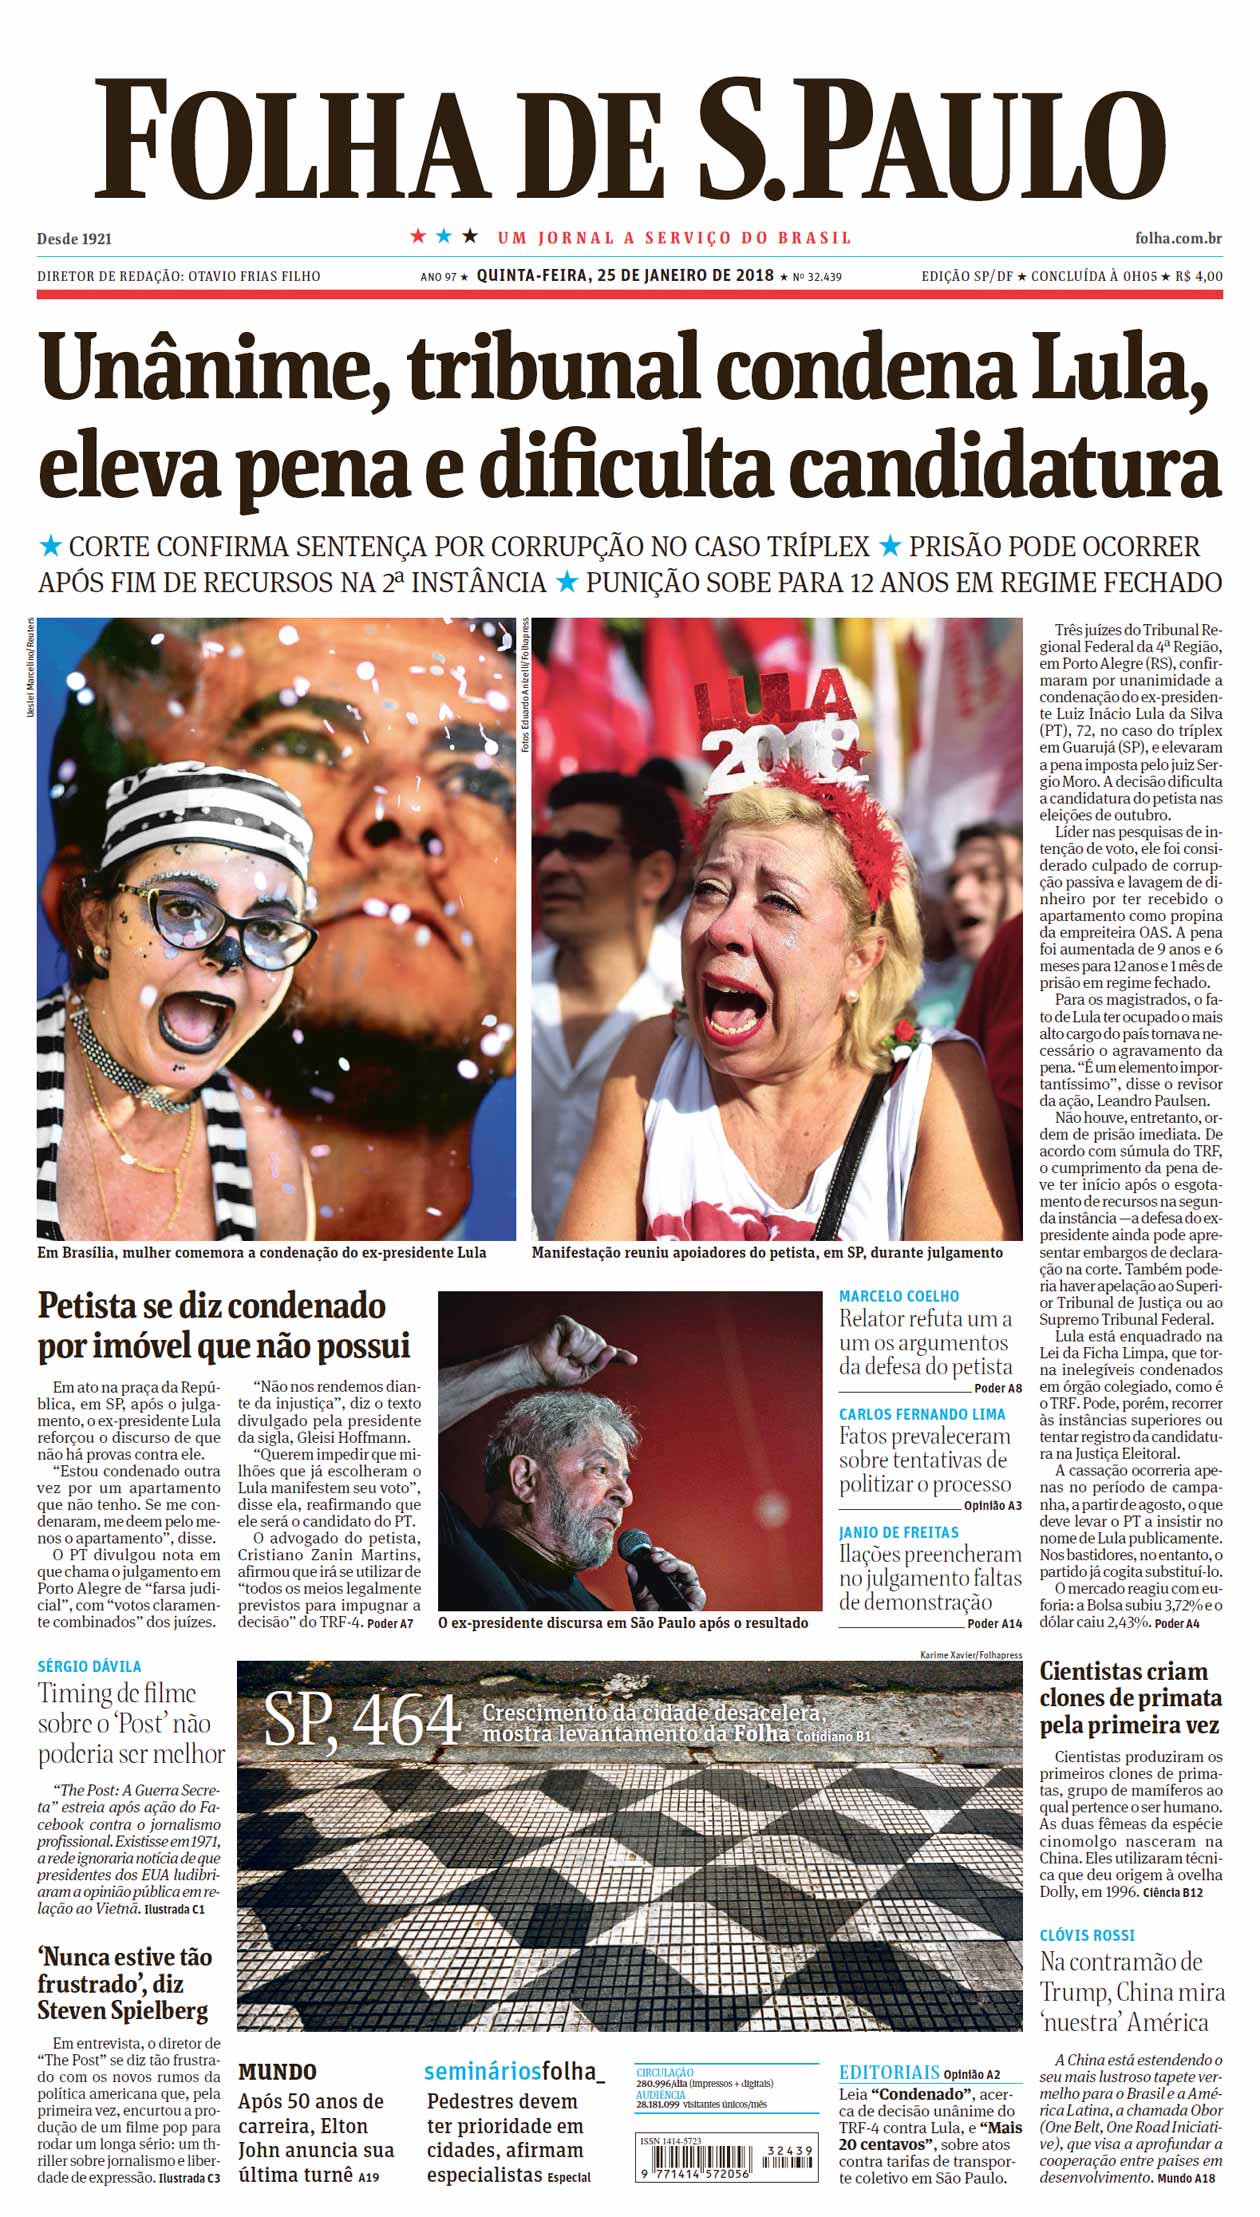 Crítica: Mundo dos leilões é cenário do bom suspense 'O Melhor Lance' -  17/07/2014 - Ilustrada - Folha de S.Paulo